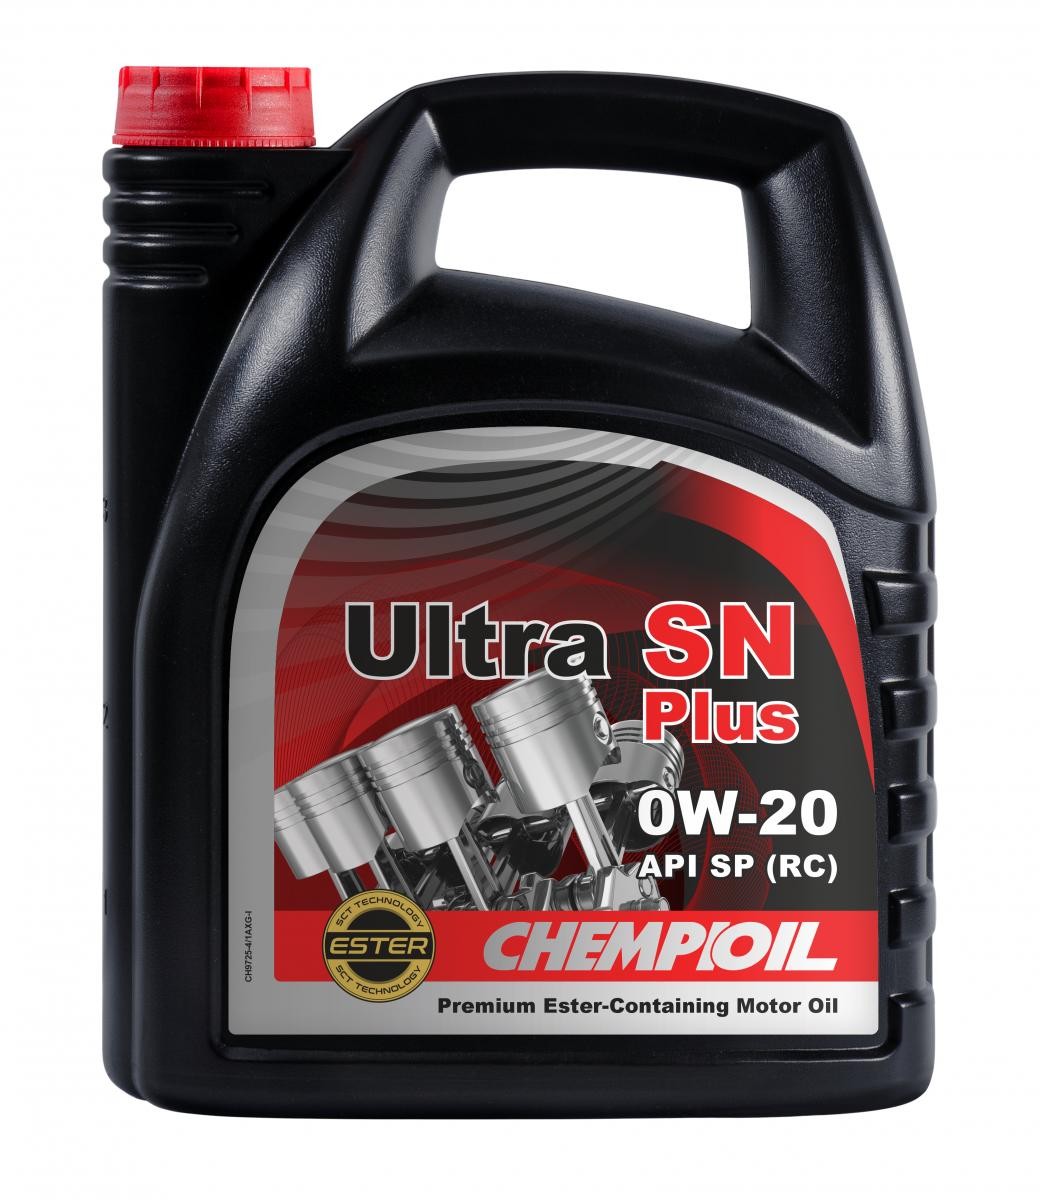 CH9725-4 CHEMPIOIL ULTRA, SN Plus 0W-20, 4l, Vollsynthetiköl Motoröl CH9725-4 günstig kaufen